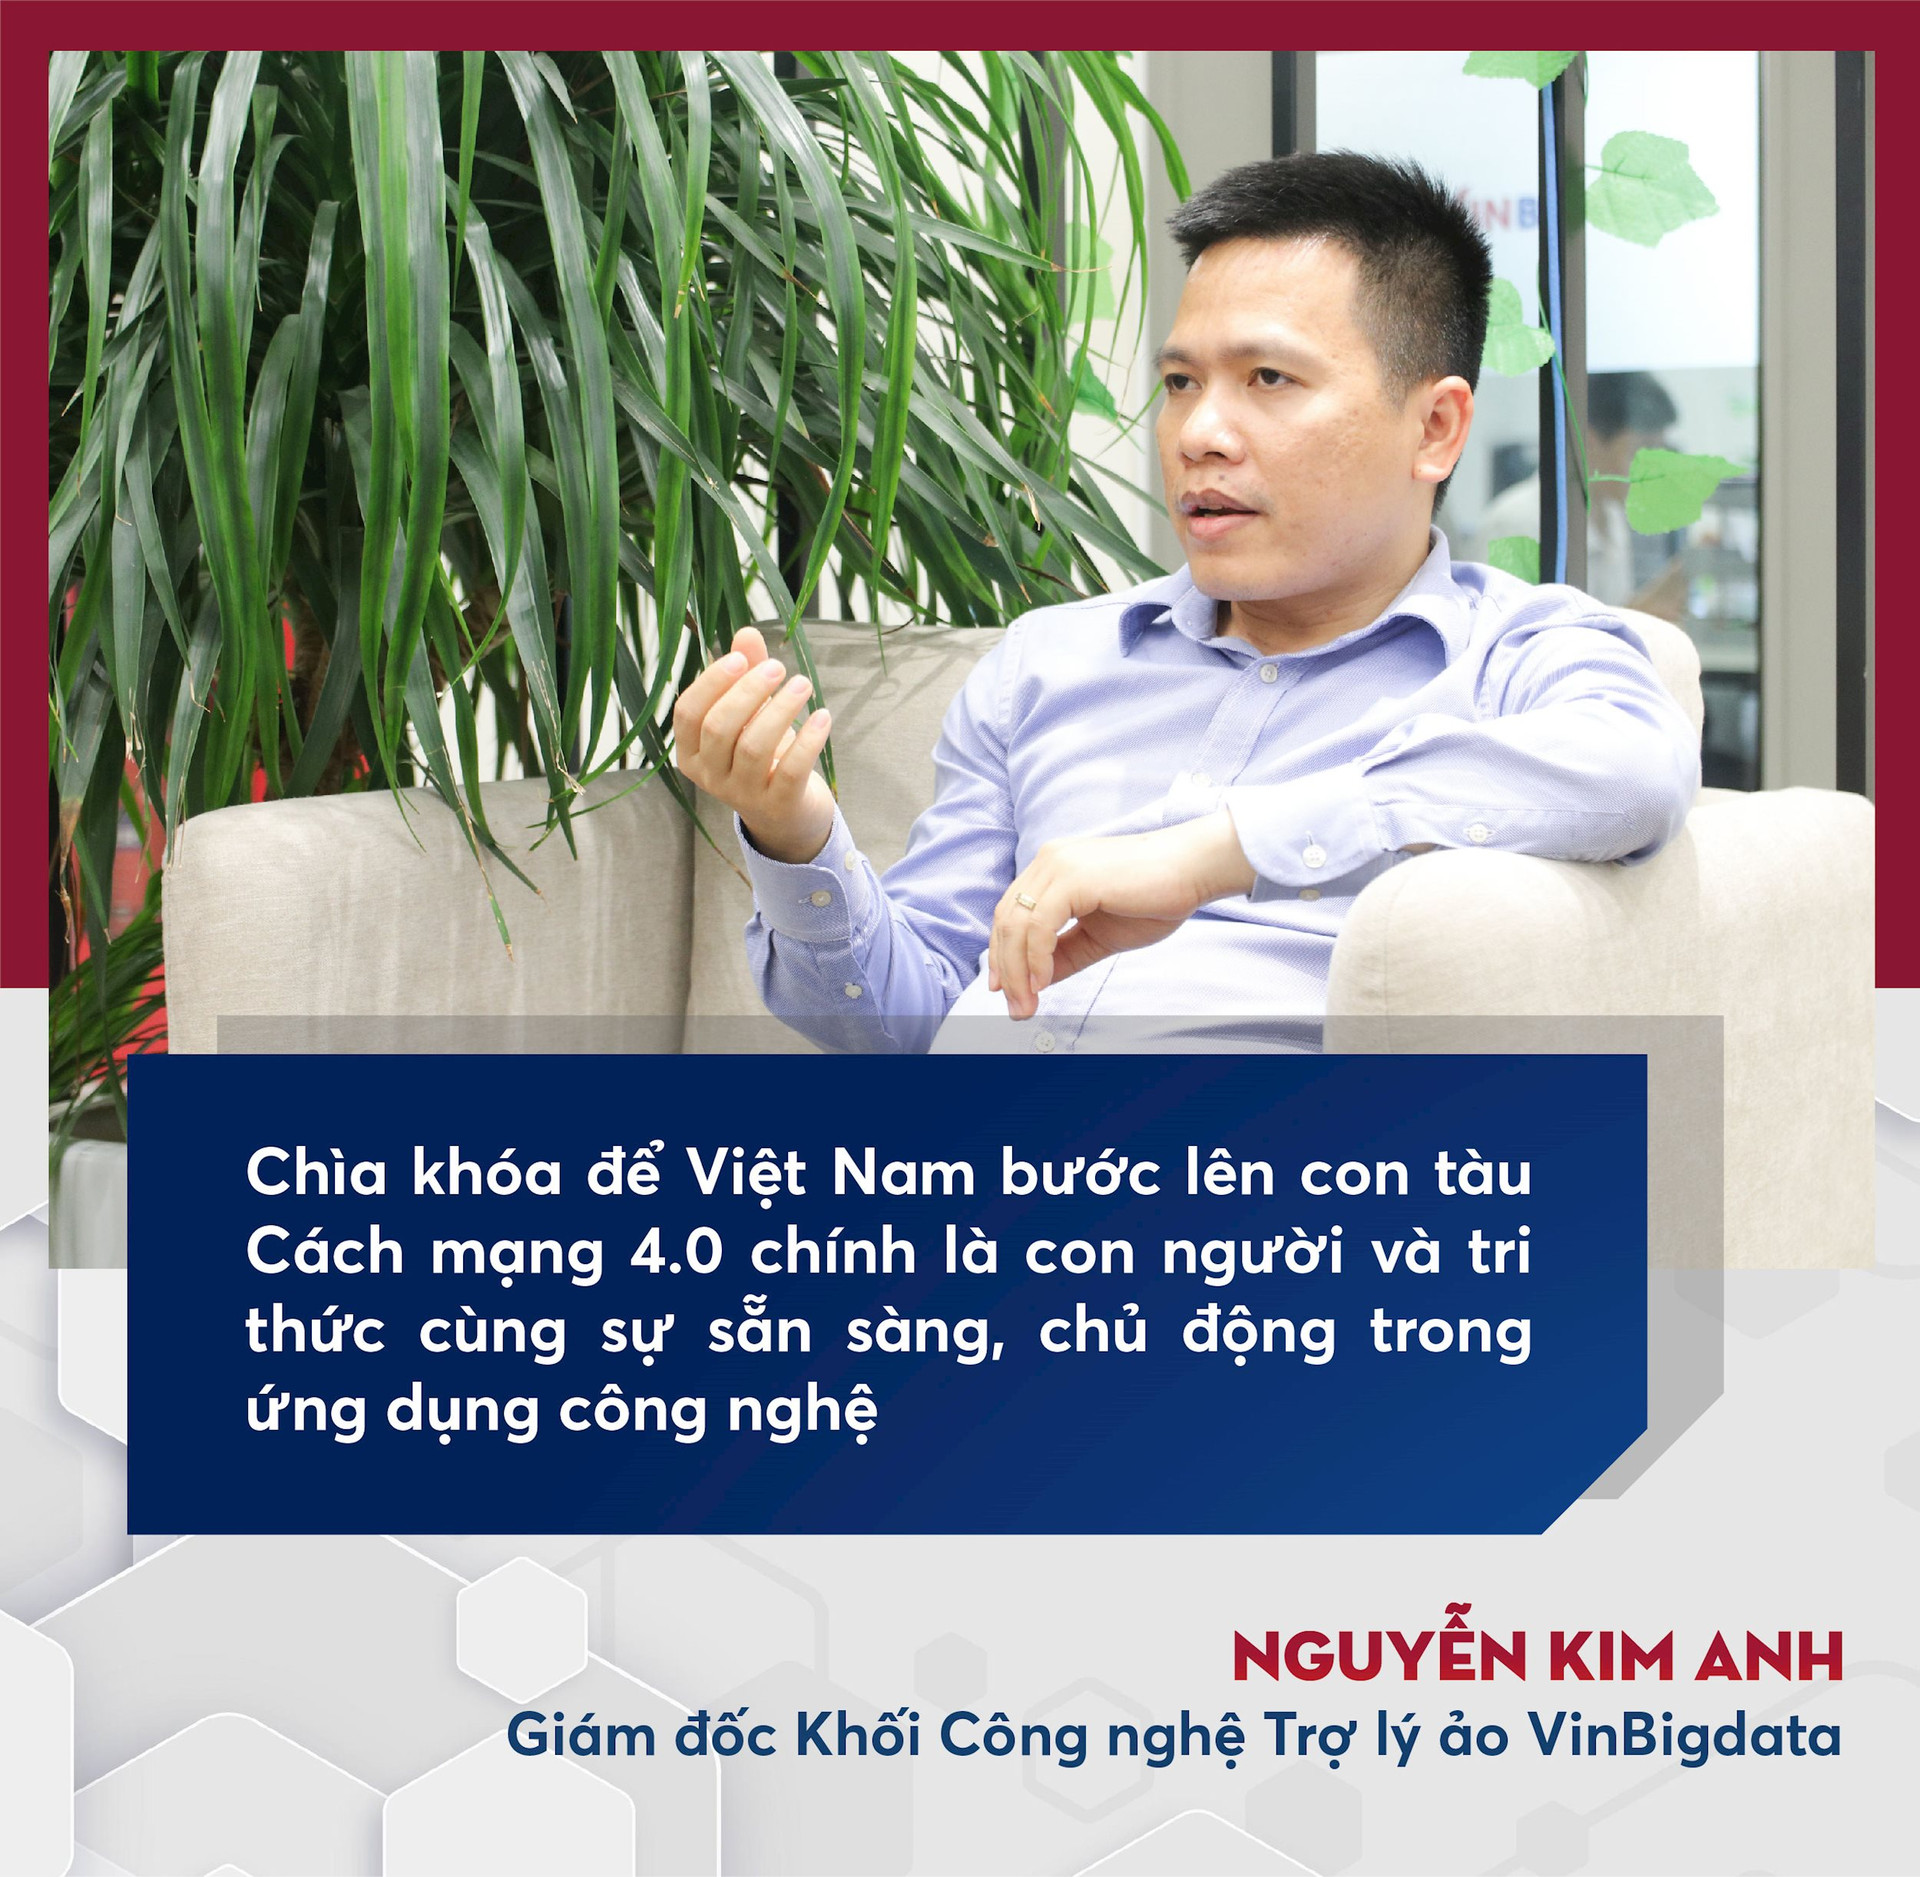 Người nắm giữ “trái tim” của trợ lý ảo ViVi trên xe VinFast: sản phẩm Việt phục vụ người Việt và ước mơ về một “Google Việt Nam” trong lĩnh vực AI - Ảnh 3.